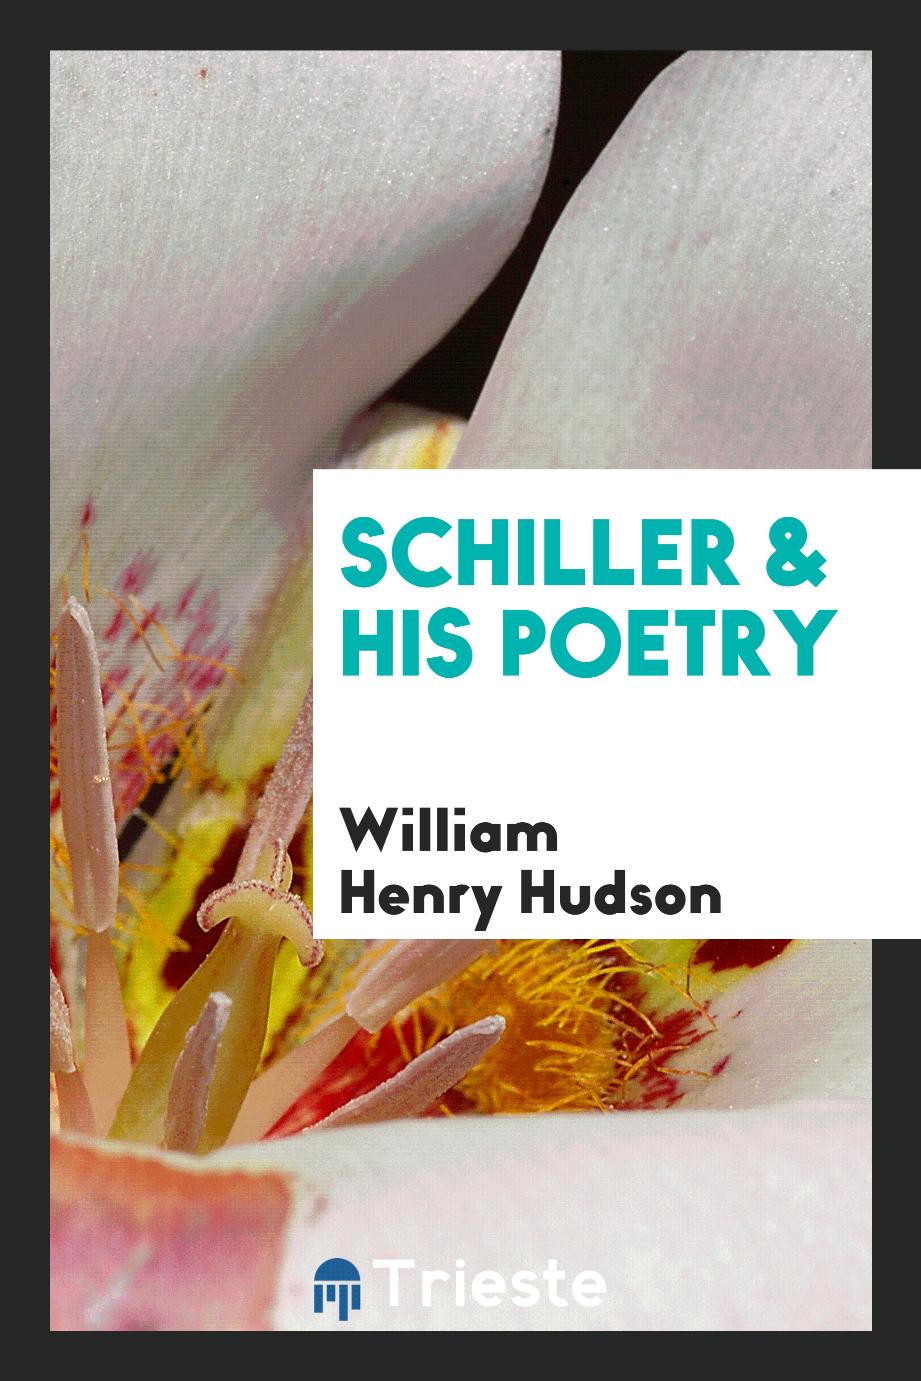 Schiller & his poetry